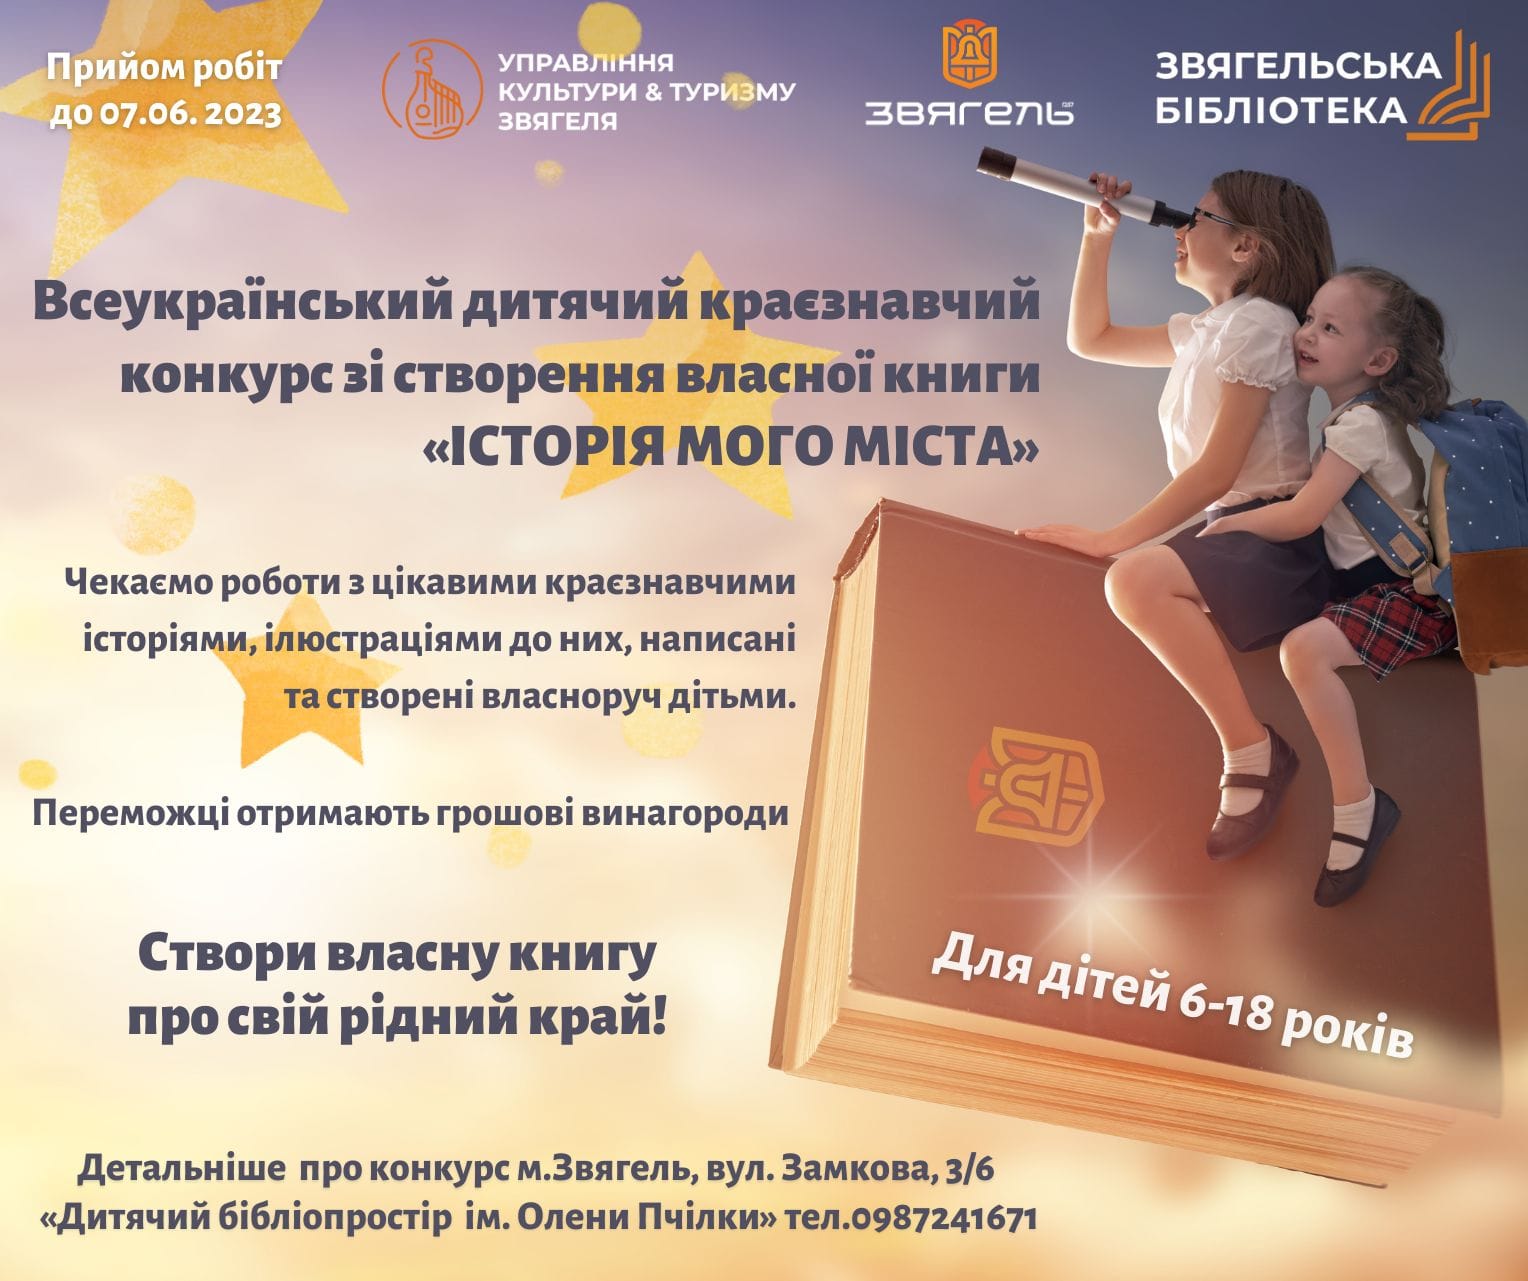 Всеукраїнський дитячий краєзнавчий конкурс зі створення власної книги “Історія мого міста”